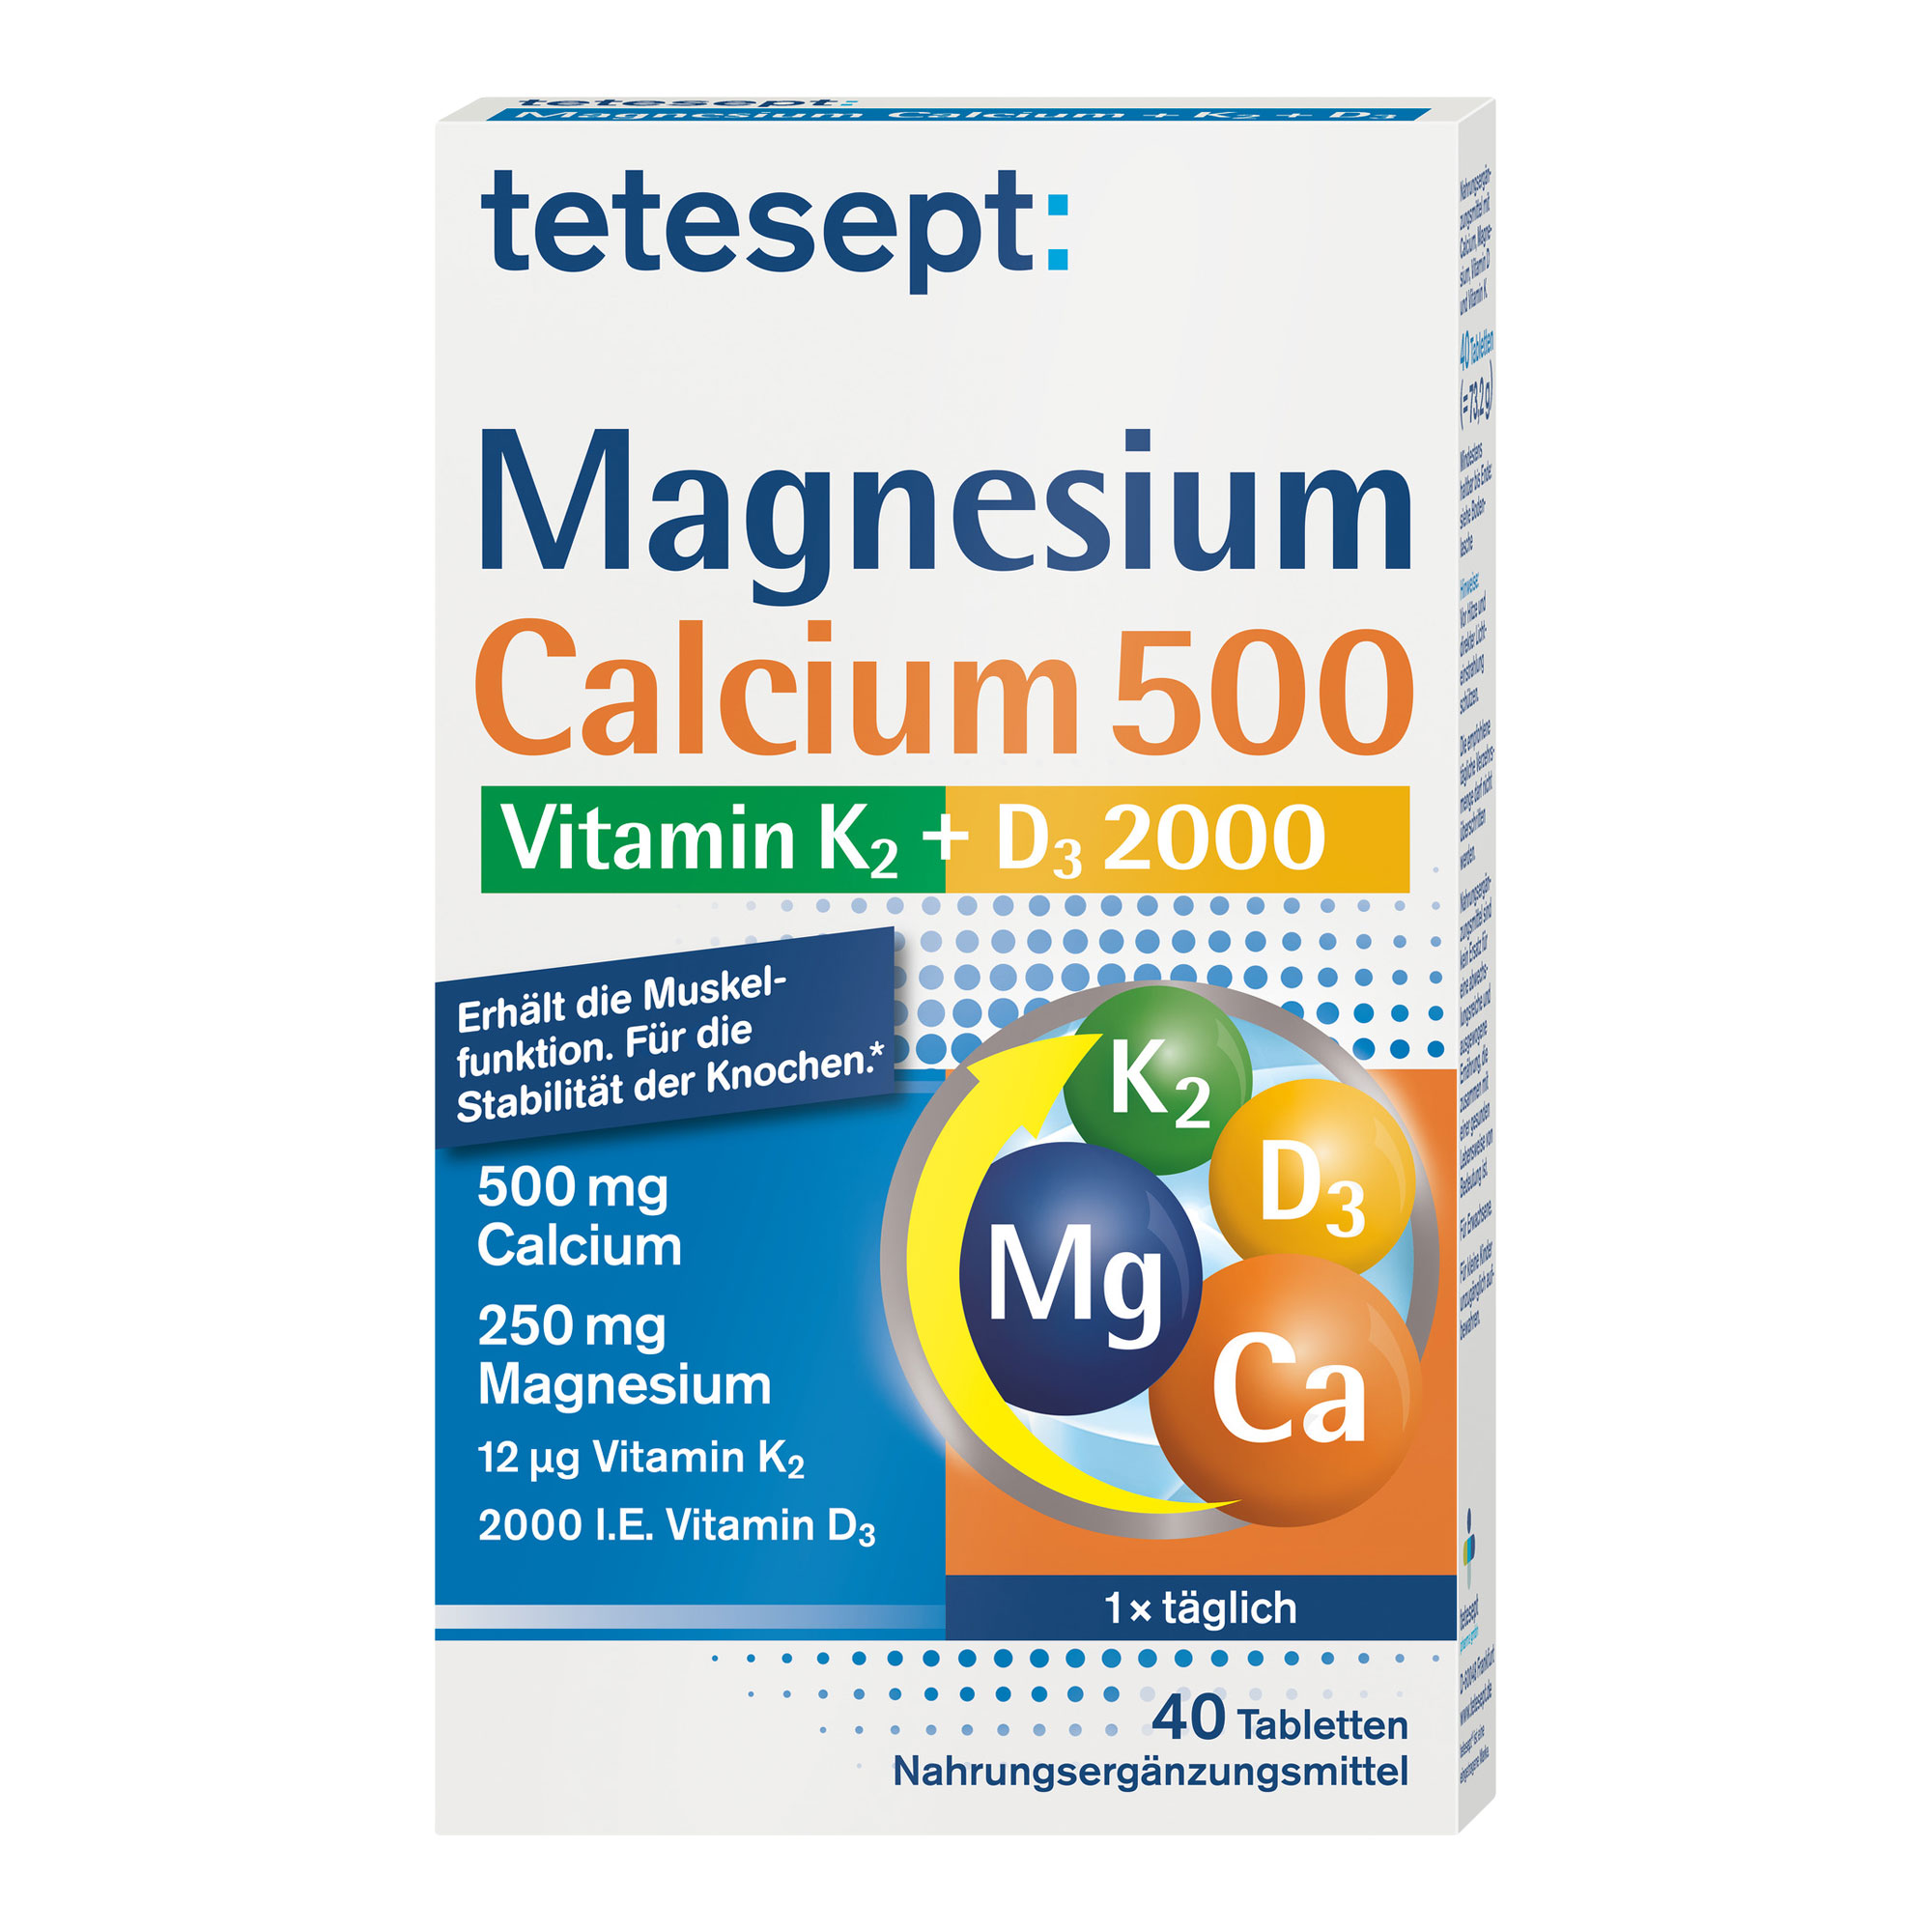 Nahrungsergänzungsmittel mit Calcium, Magnesium, Vitamin D und Vitamin K.